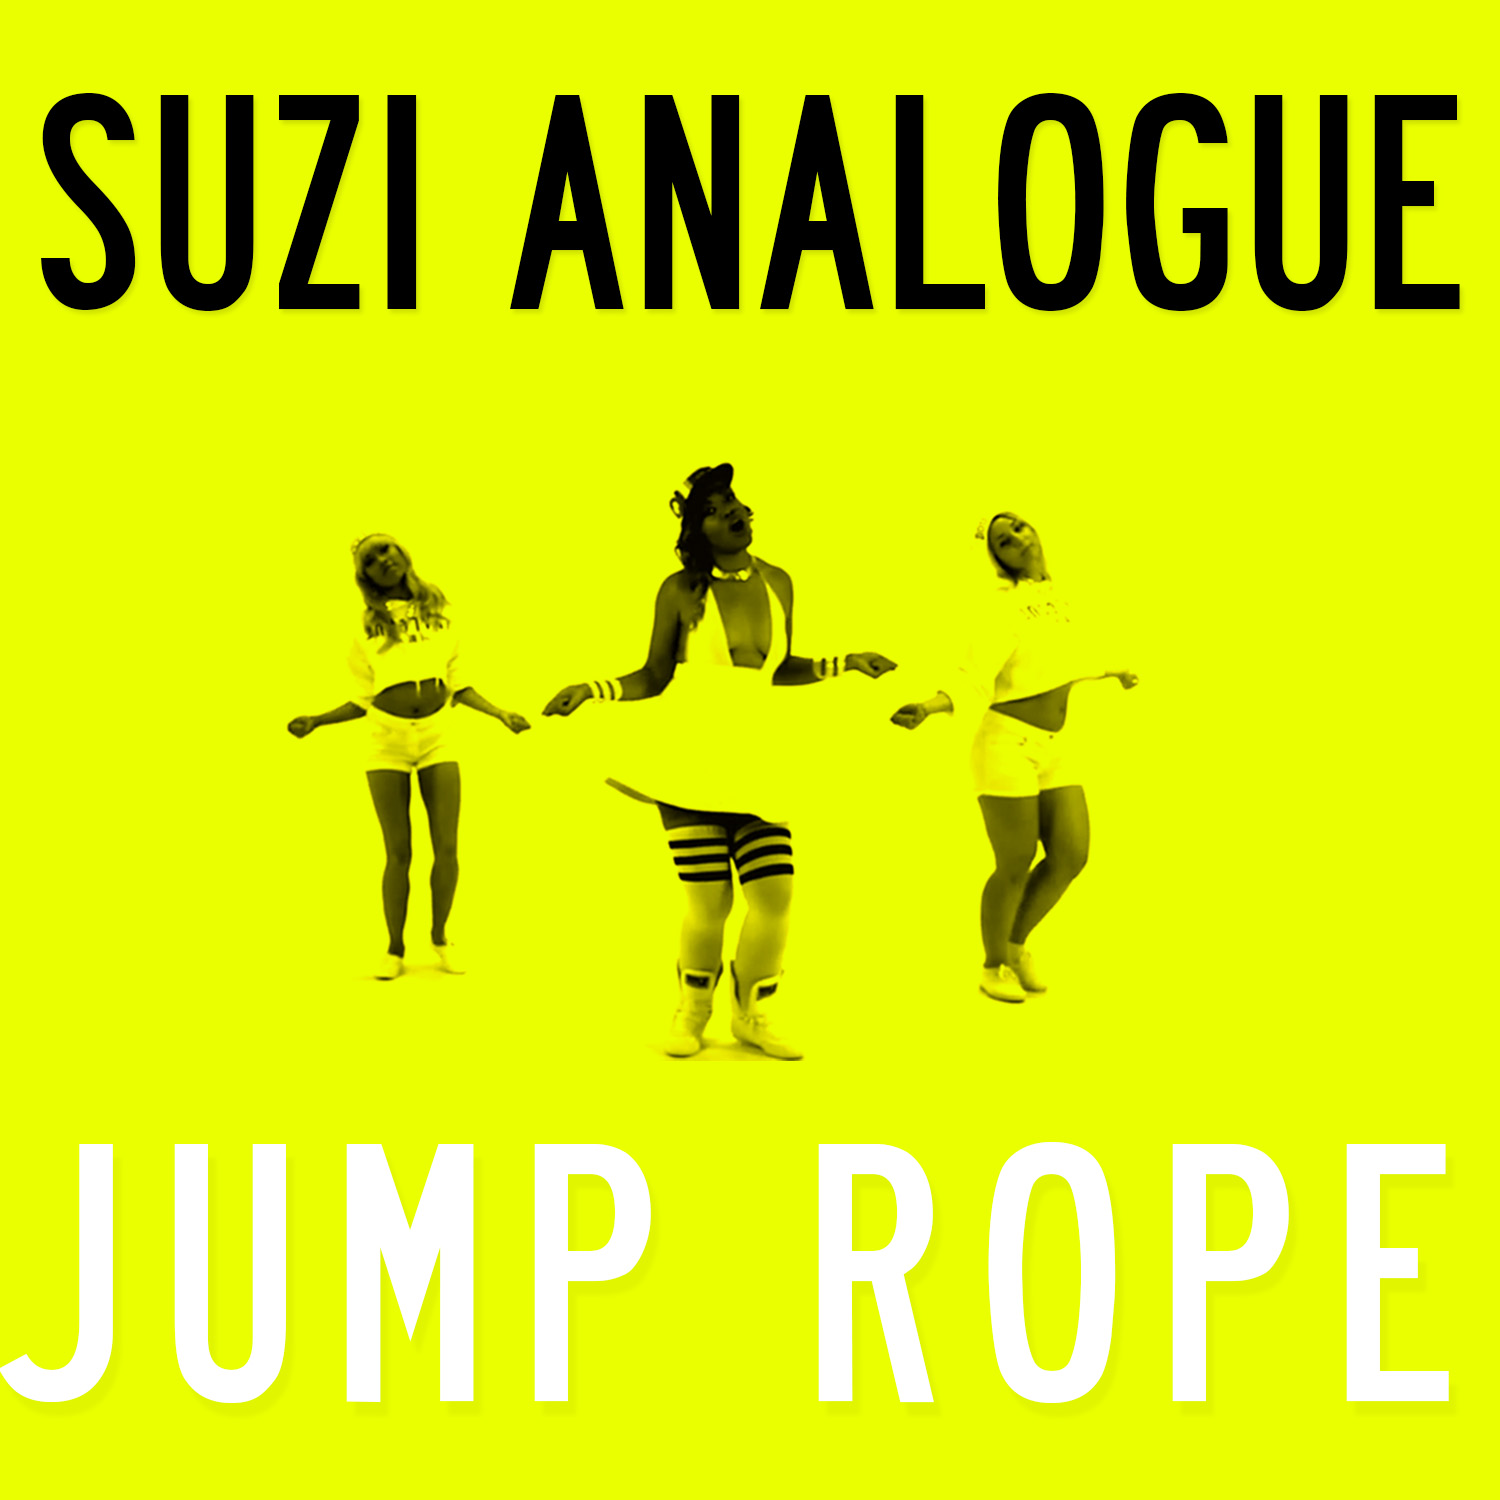 Suzi Analogue “Jump Rope” Video